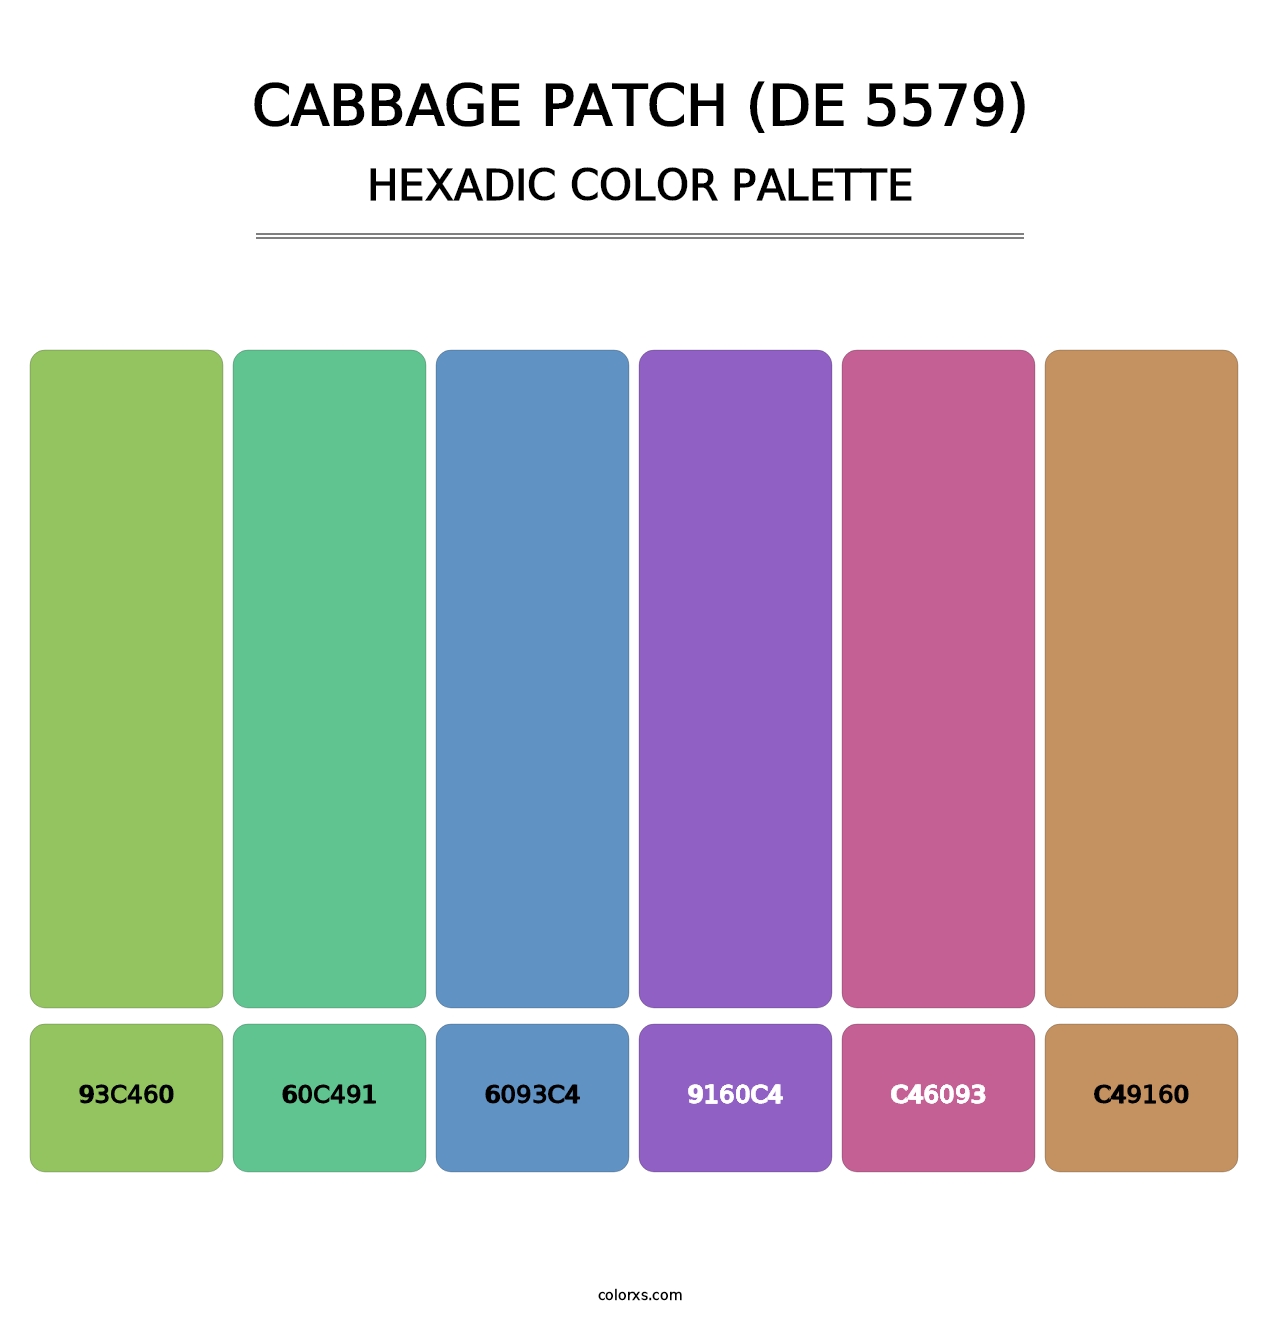 Cabbage Patch (DE 5579) - Hexadic Color Palette